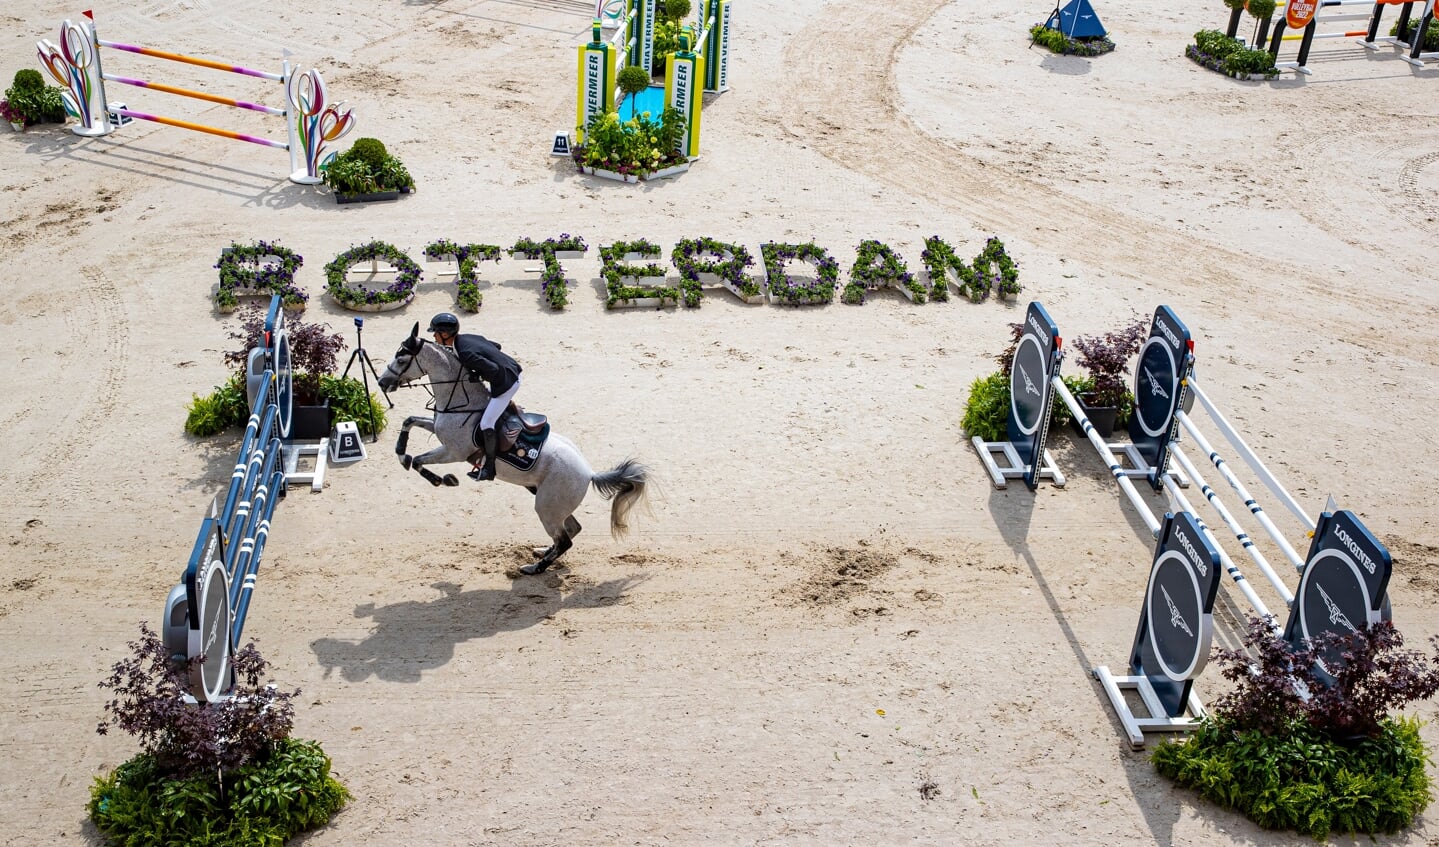 Kevin Jochems - Cornetboy
CHIO Rotterdam 2022
© DigiShots